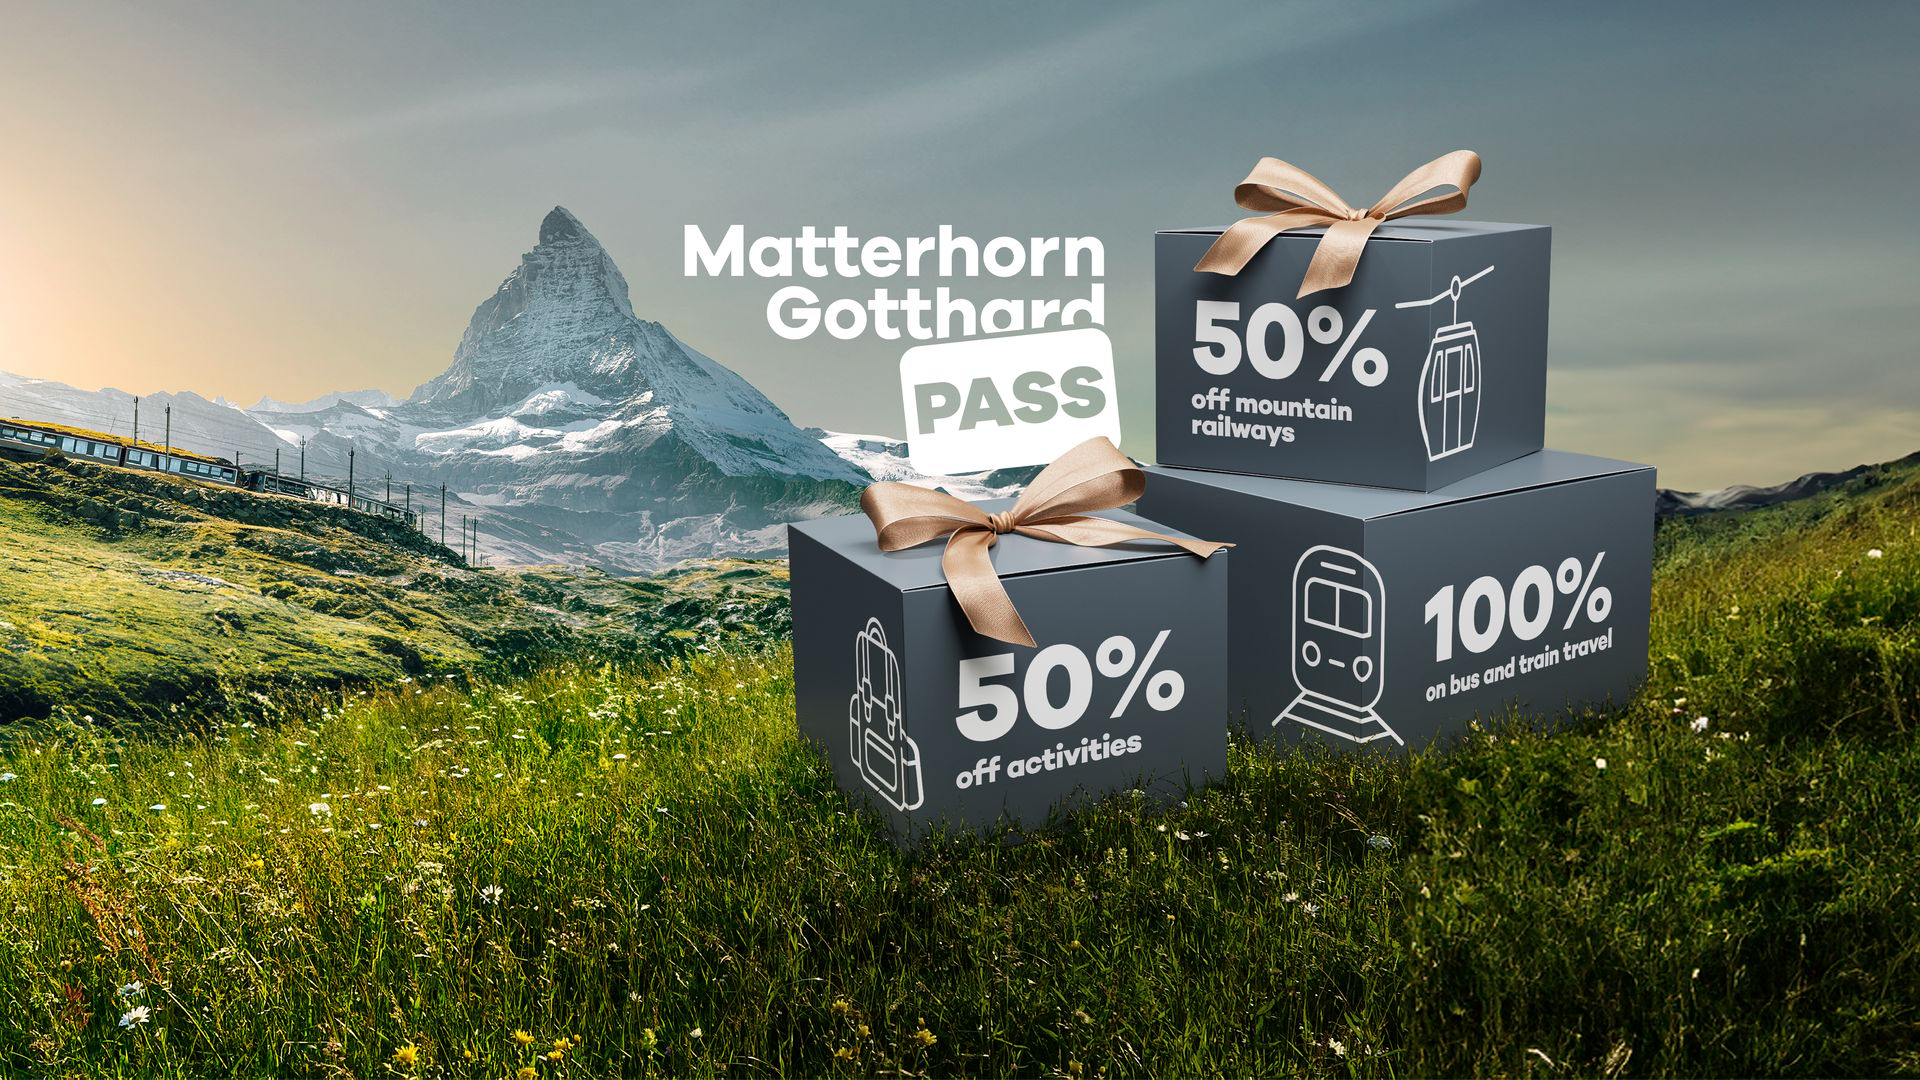 Matterhorn Gotthard Pass Visual